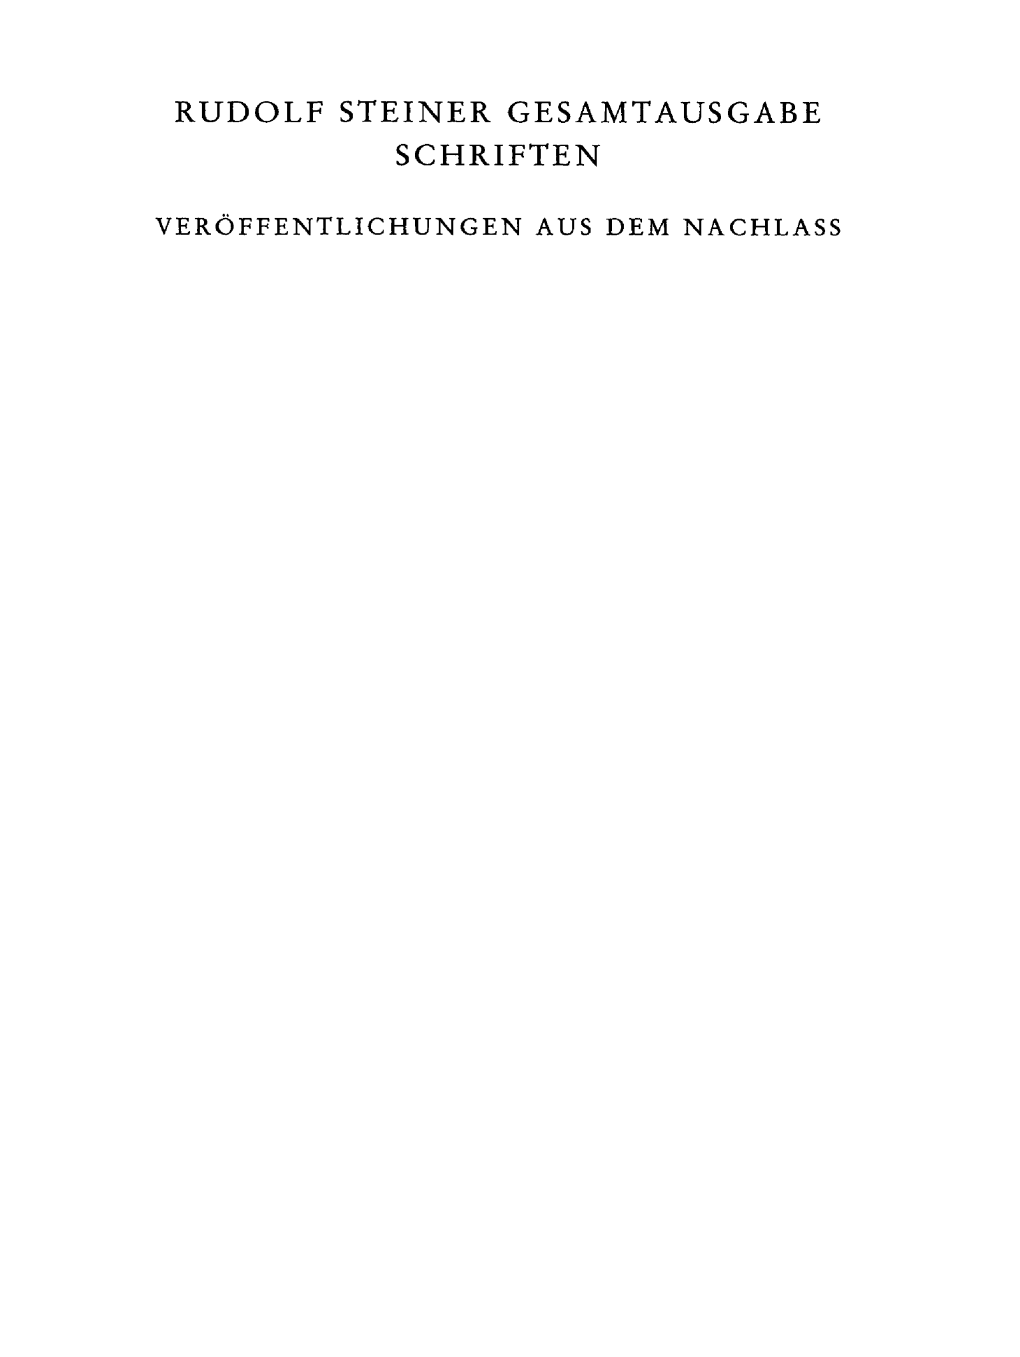 Rudolf Steiner Gesamtausgabe Schriften